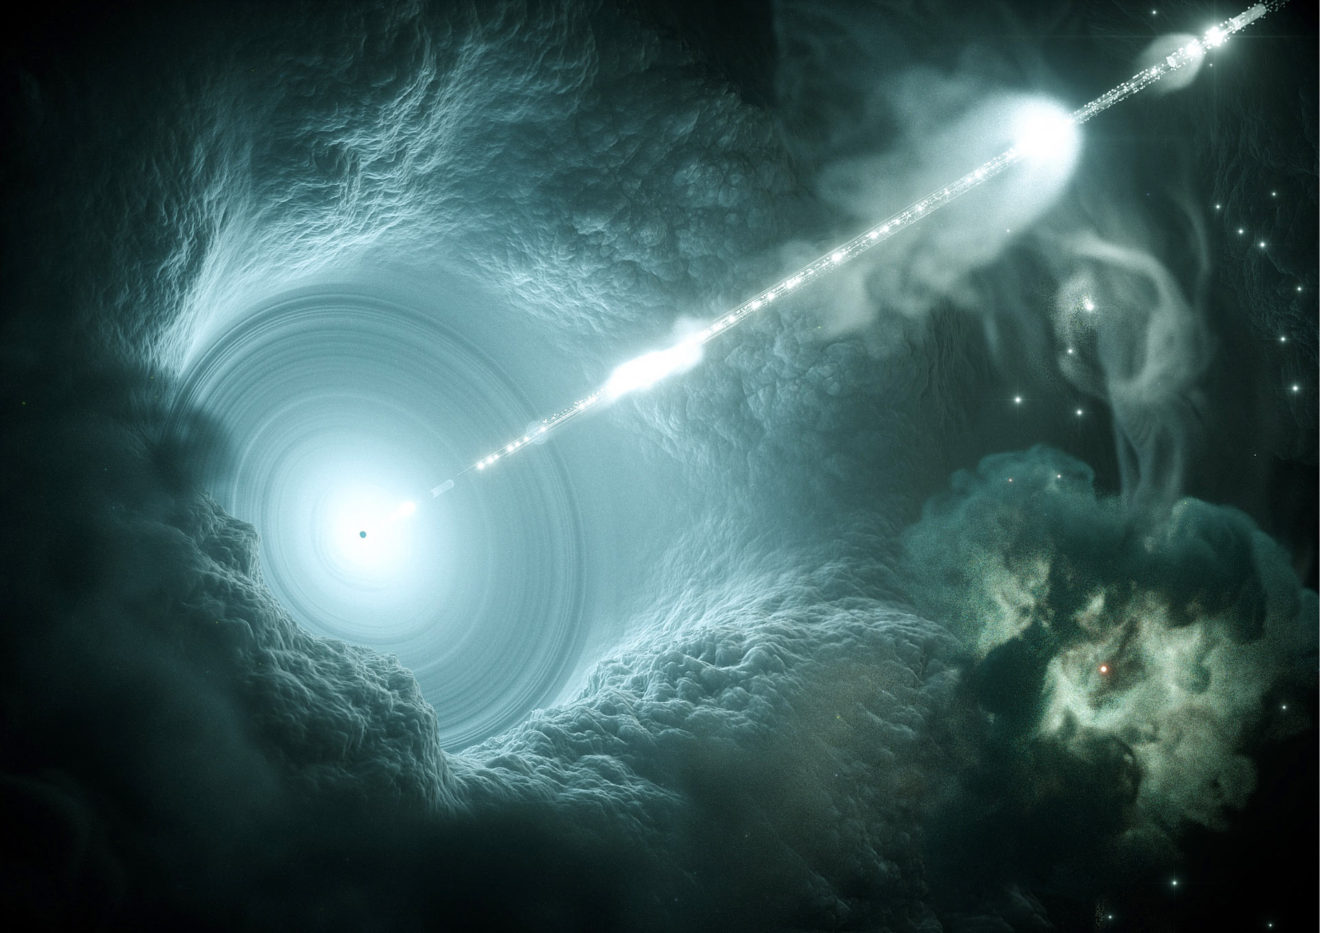 Nou weten we waarom neutrino IC170922A van blazar TXS 0506+056 zo energierijk was